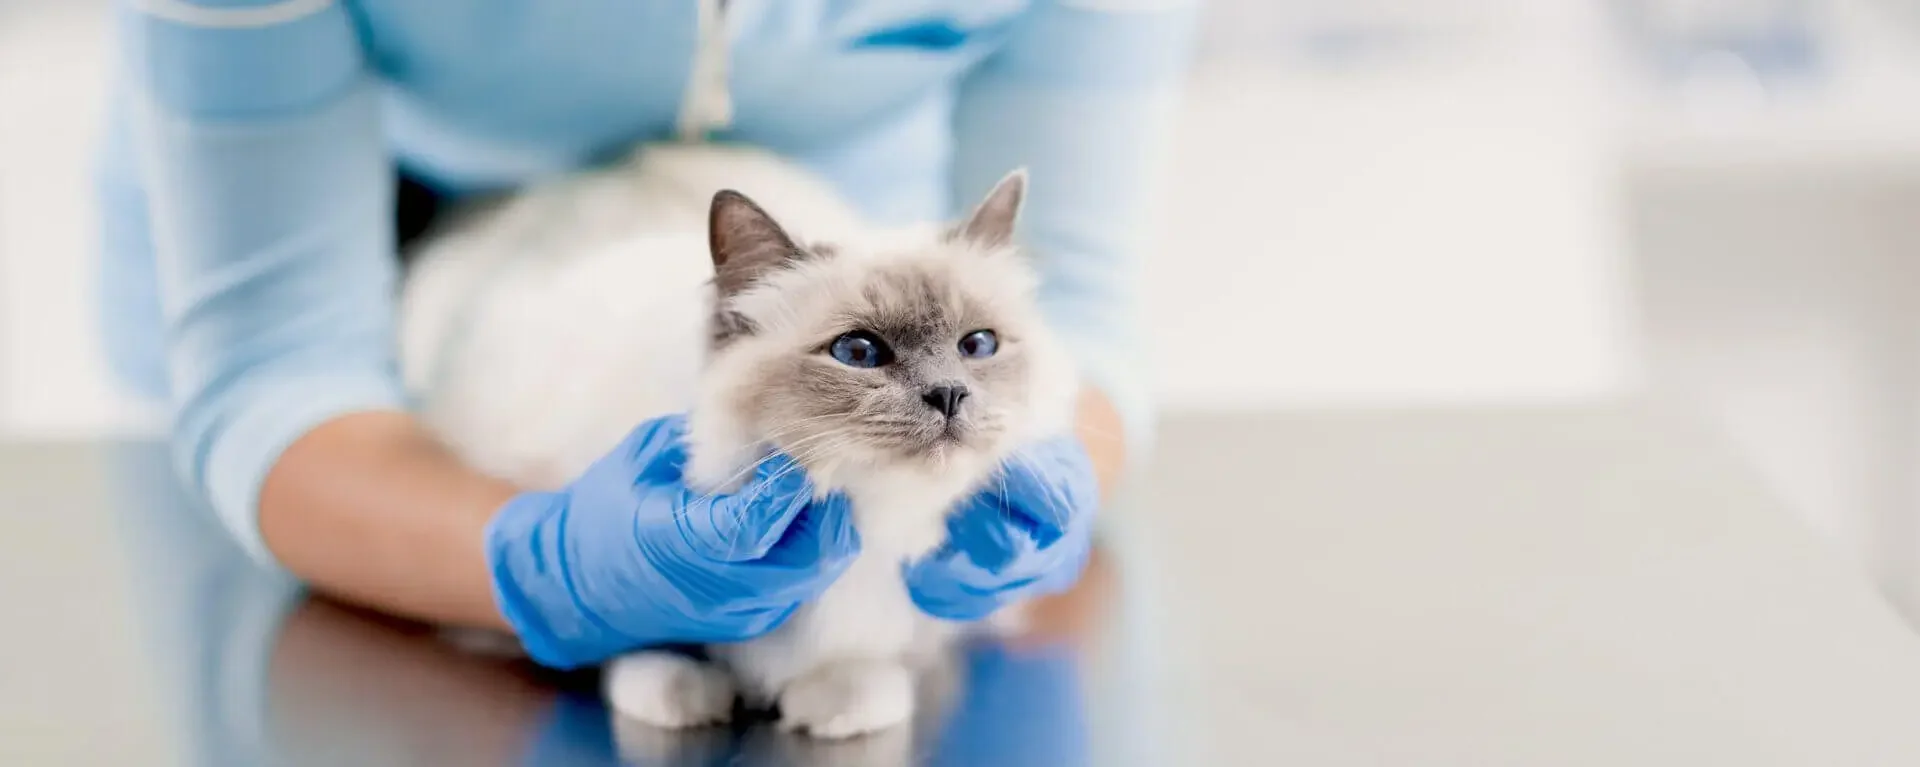 pribolevshiy-kotenok Пять распространённых заболеваний у котят